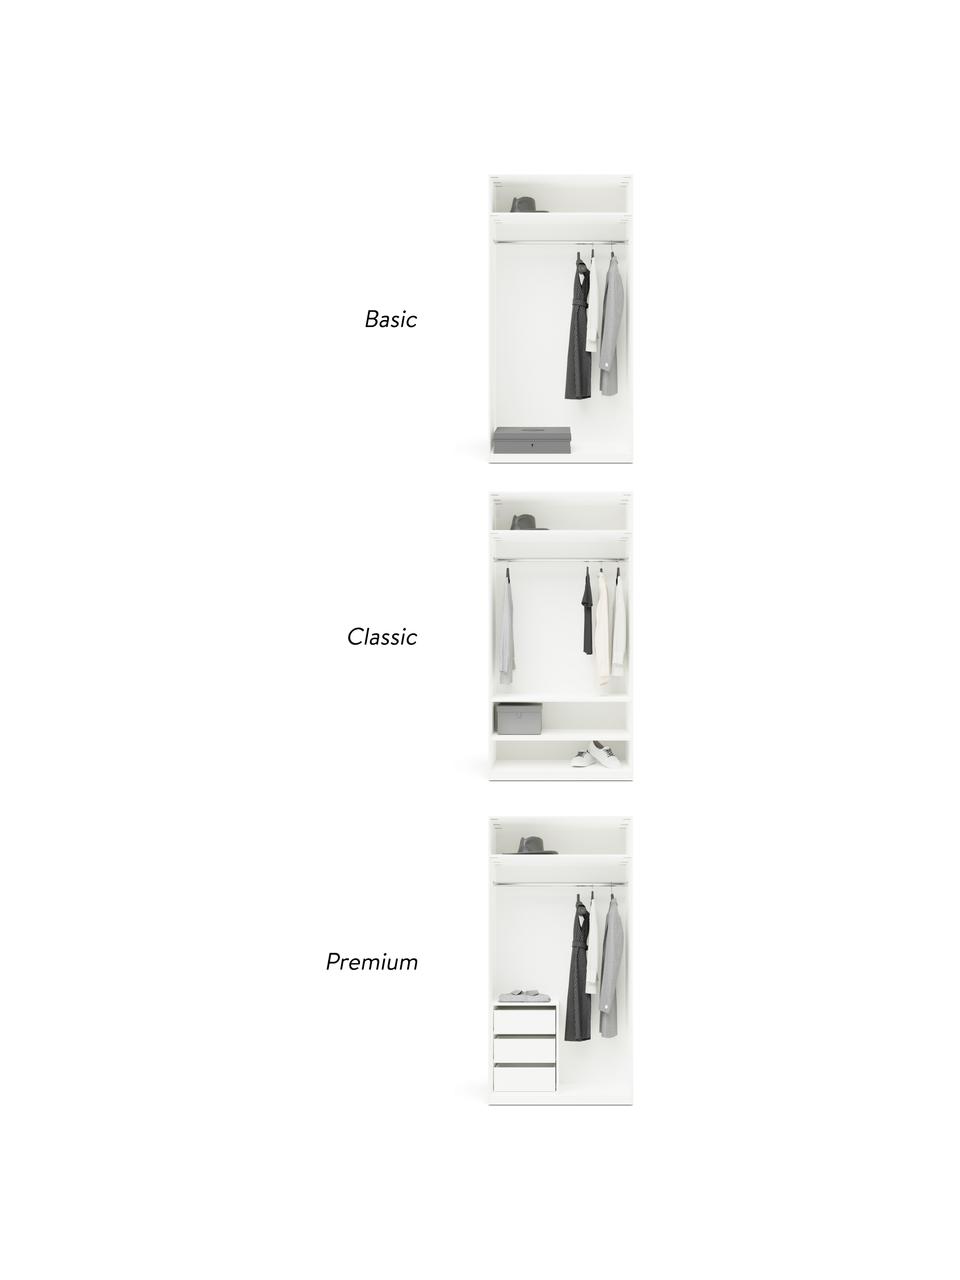 Szafa modułowa Simone, 2-drzwiowa, różne warianty, Korpus: płyta wiórowa pokryta mel, Beżowy, W 200 cm, Basic